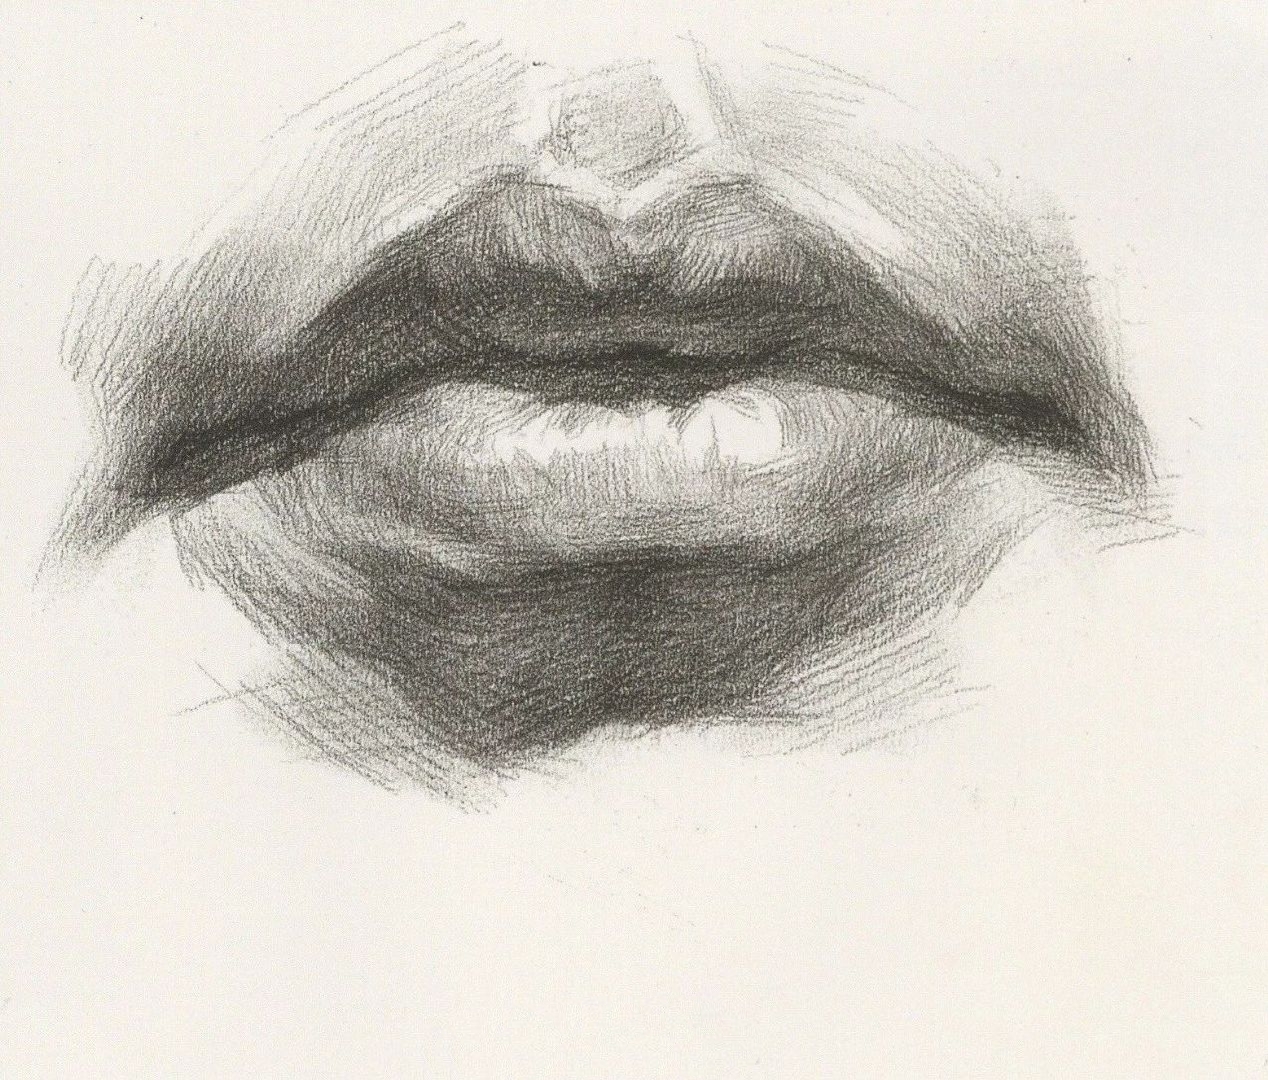 唇部表现要点1,对象上嘴唇空间感较弱,起稿时强调上唇结节